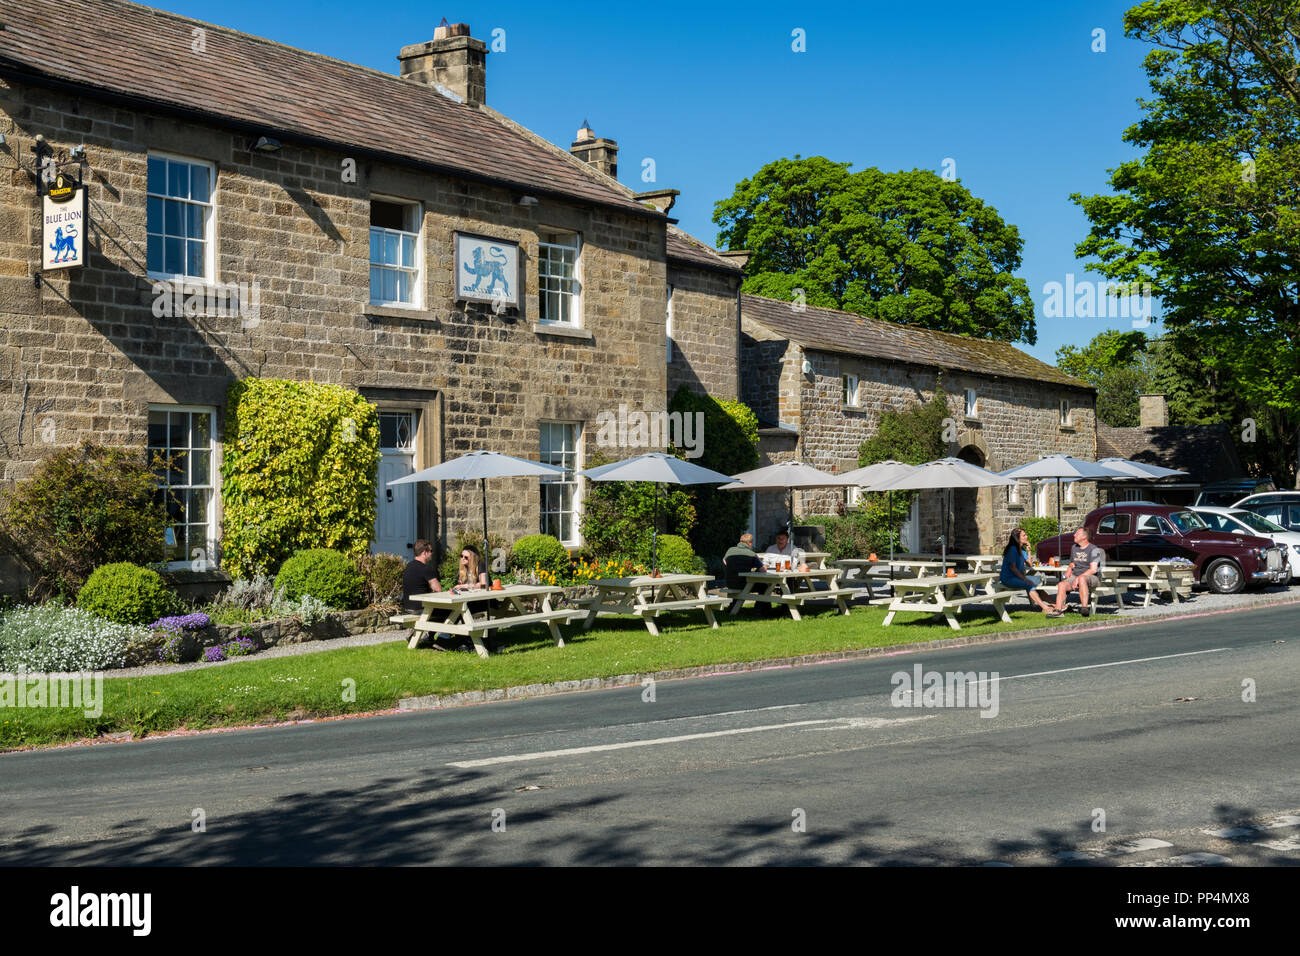 Les clients bénéficient de boissons en plein air au soleil sous les parasols tables à l'extérieur de la pittoresque Blue Lion Inn - East Witton, North Yorkshire, Angleterre, Royaume-Uni. Banque D'Images